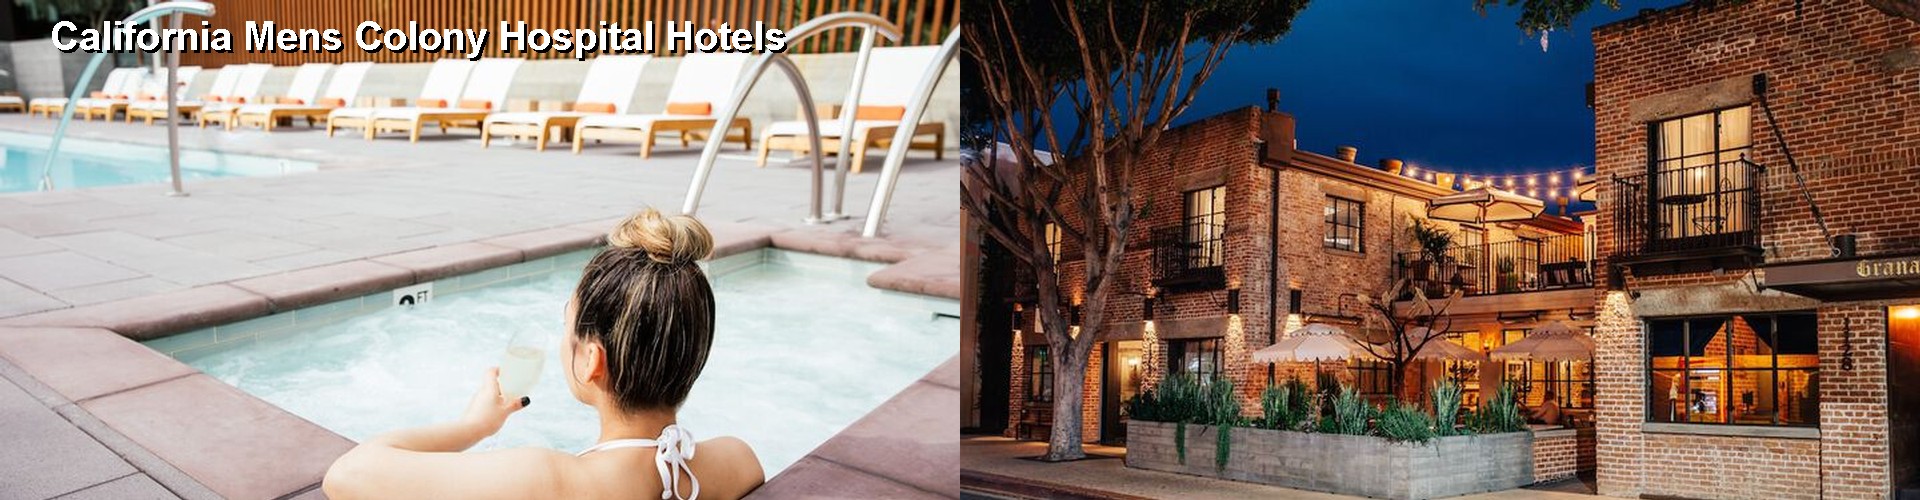 4 Best Hotels near California Mens Colony Hospital